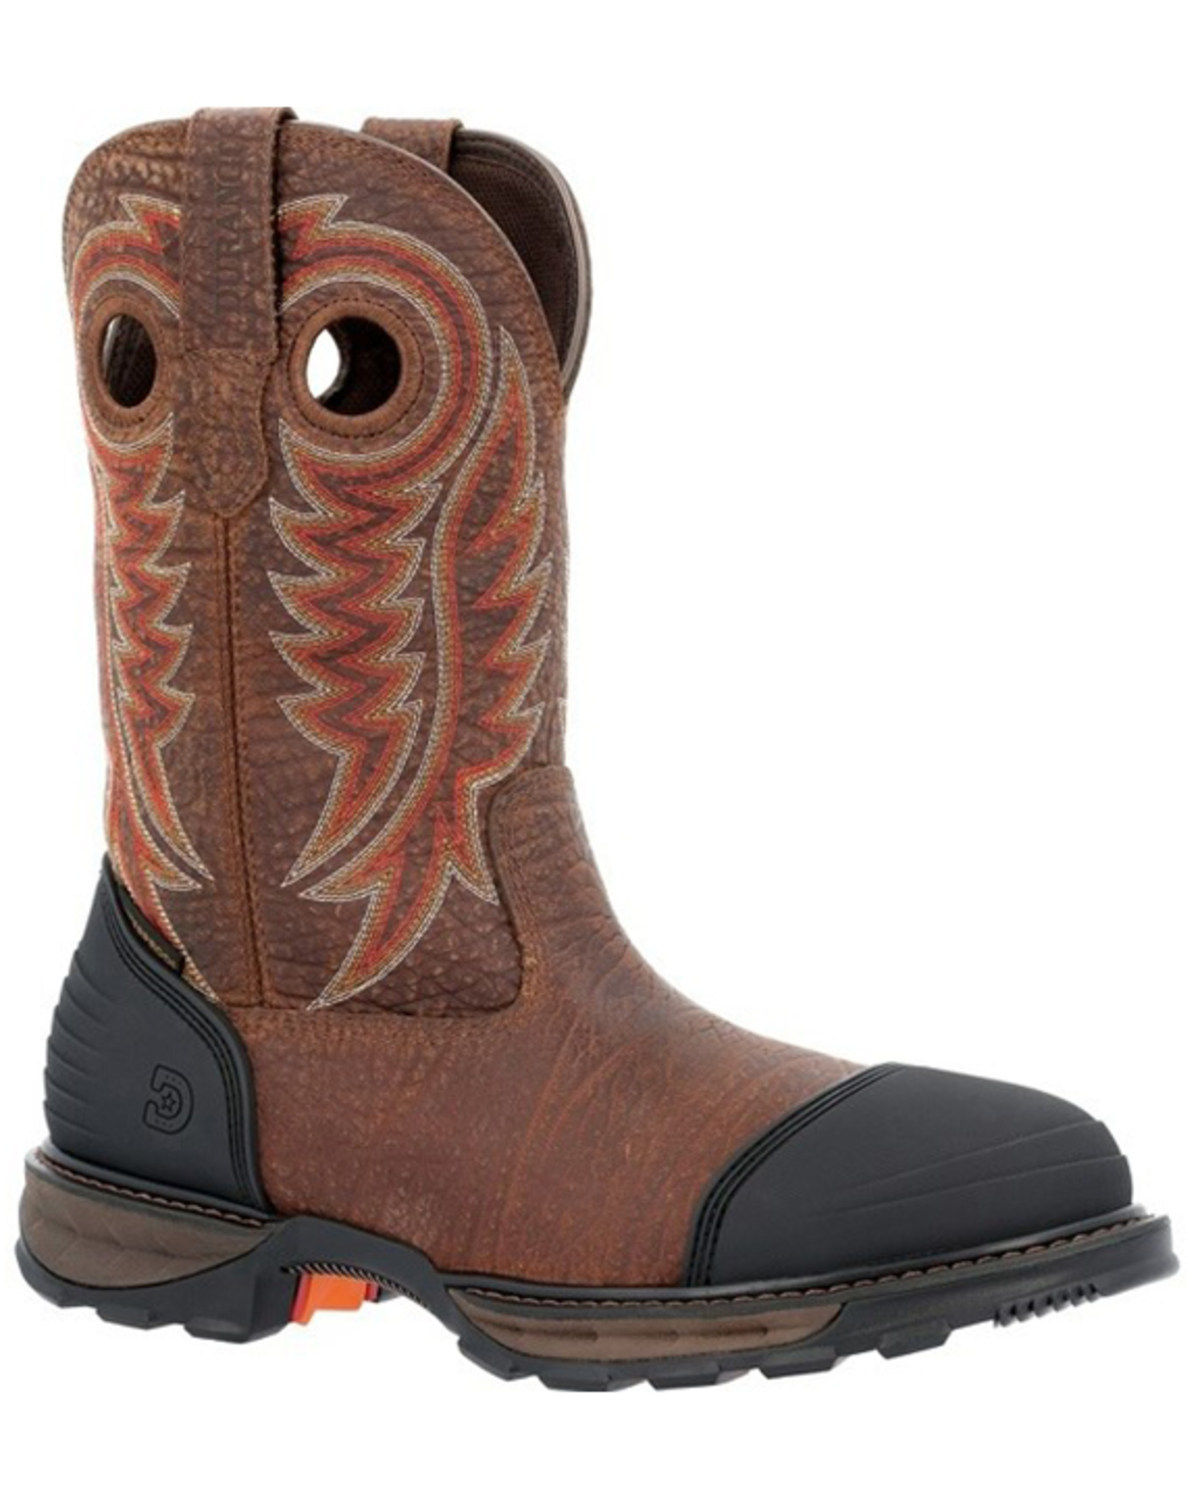 Durango Men's 11" Waterproof Western Work Boots - Steel Toe